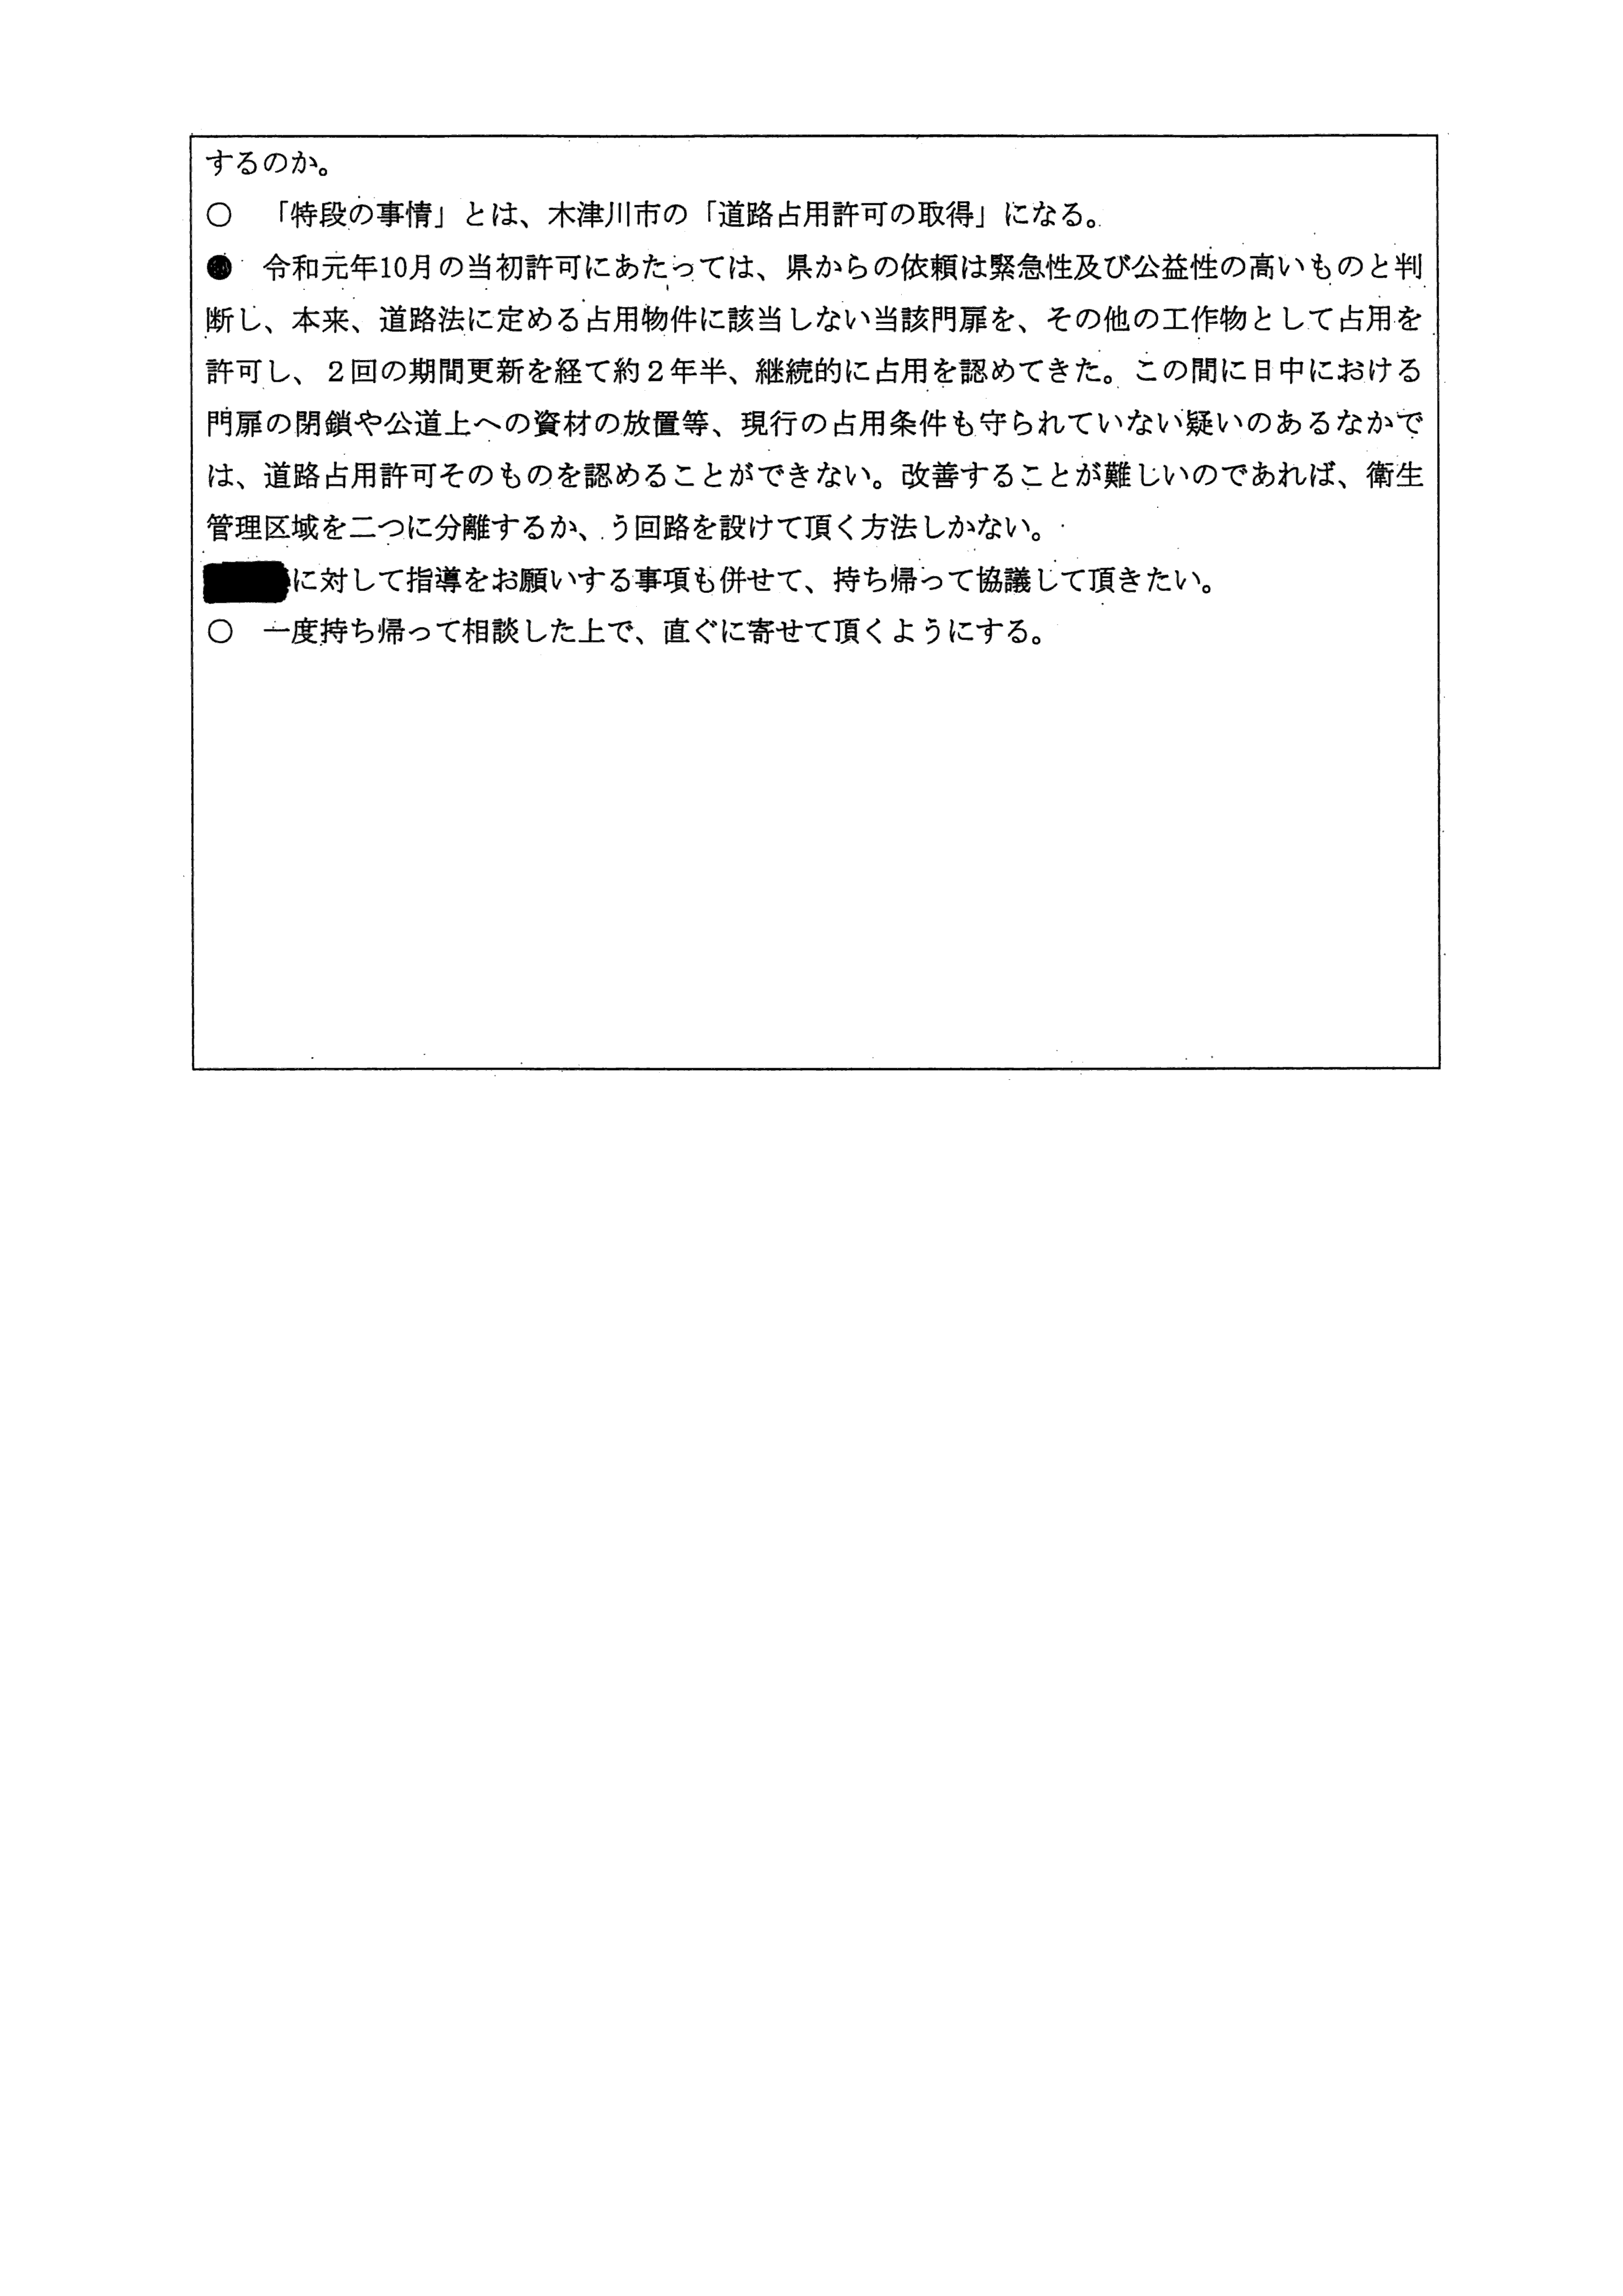 令和4(2022)年2月21日-村田商店の占用許可条件変更について（奈良県との協議）-03